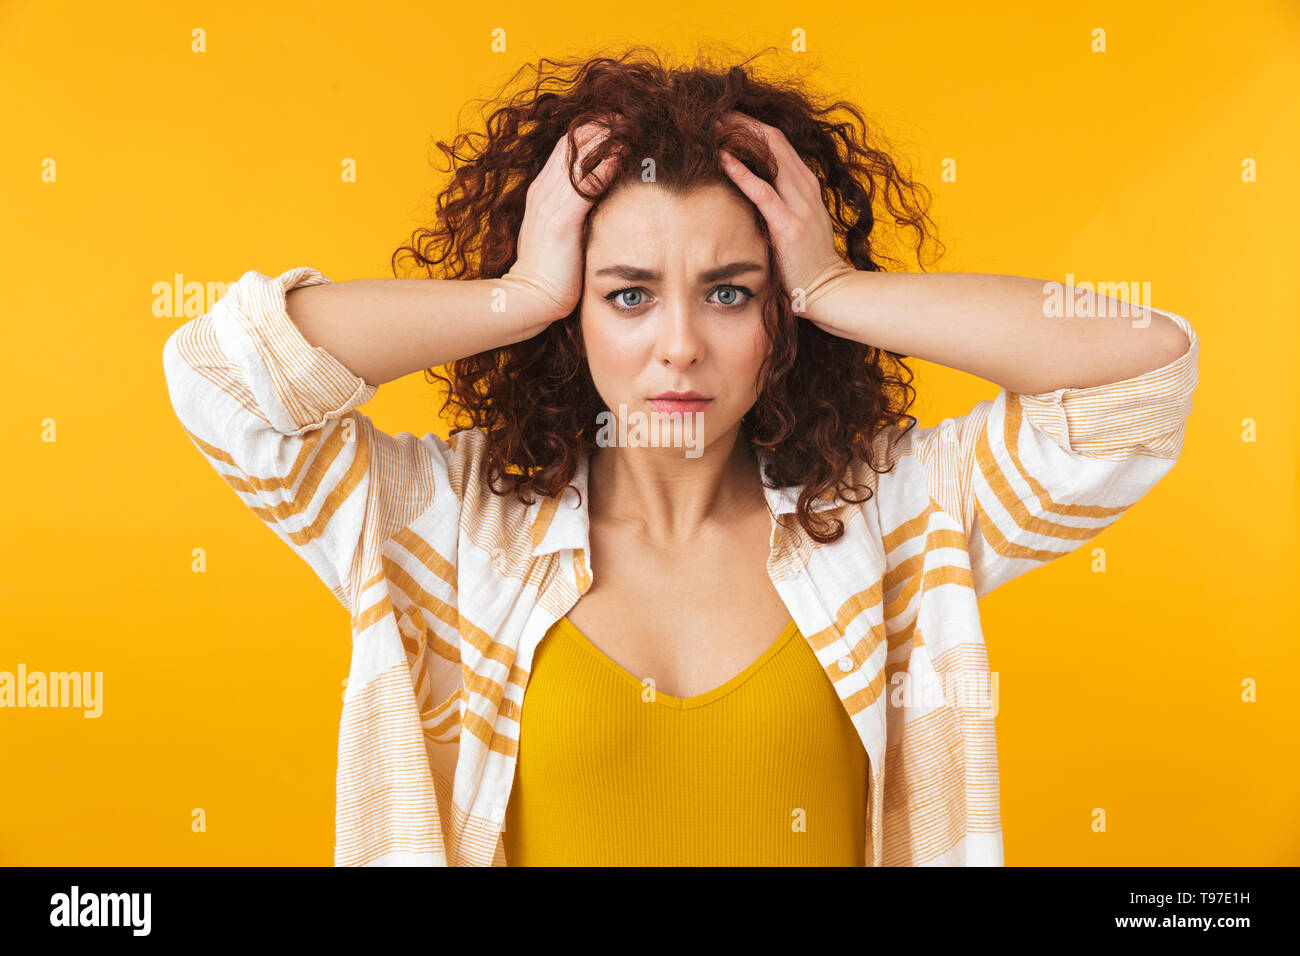 Immagine della donna tesa 20s con capelli ricci, la afferra per la testa, isolate su sfondo giallo Foto Stock